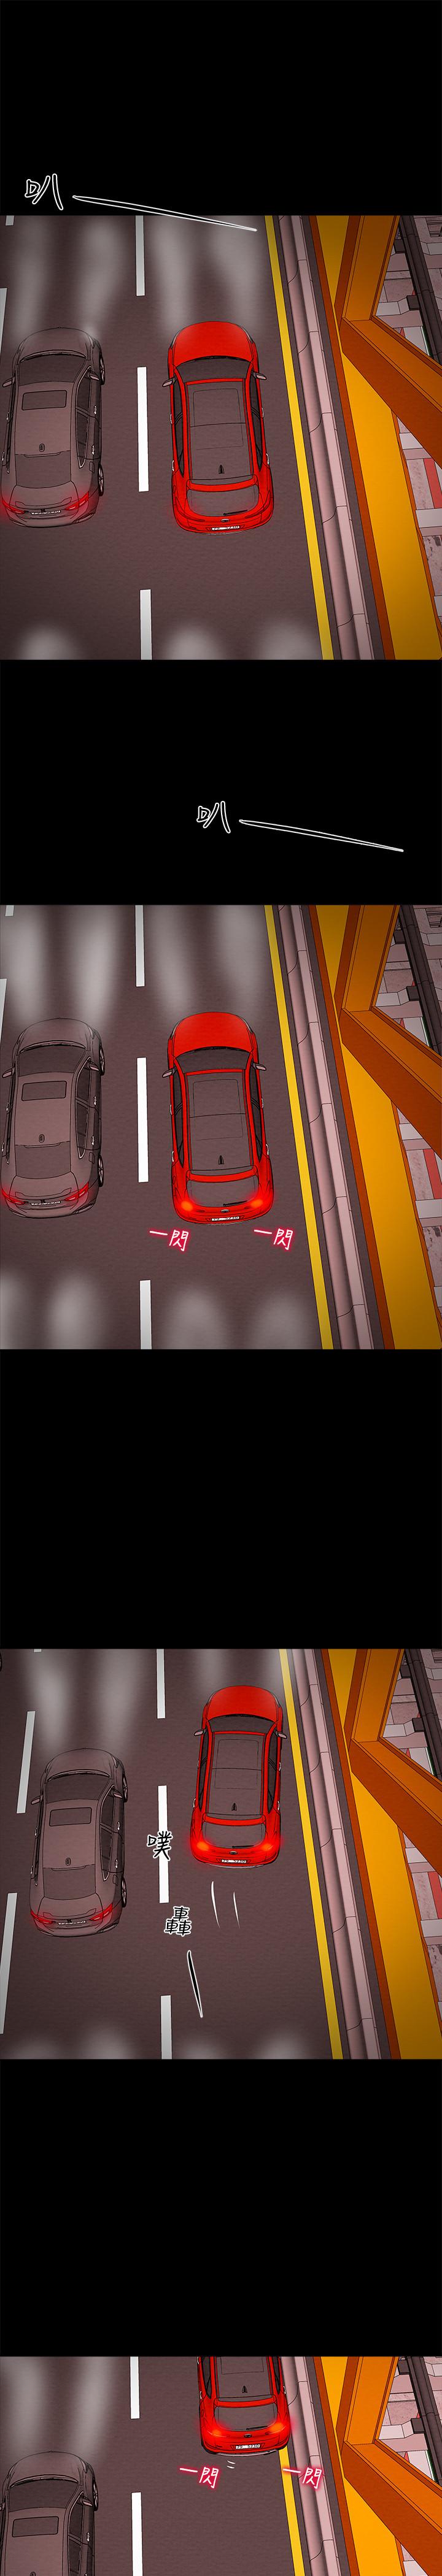 《纯情女攻略计划》漫画 第5话 - 临停路边的刺激车震